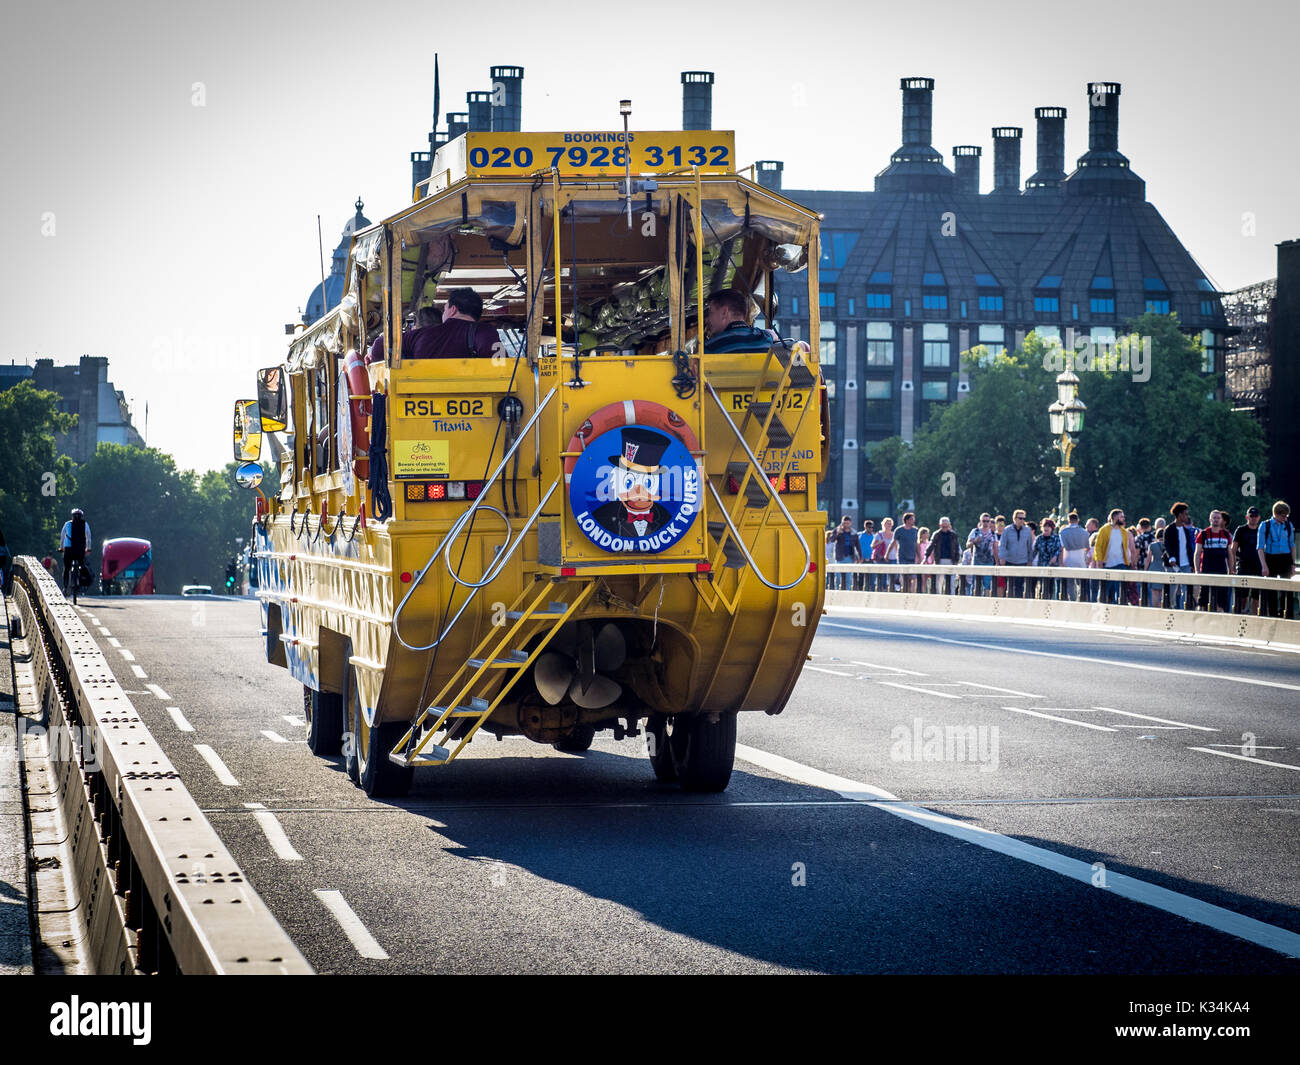 Pato DUKW transportes turísticos de Londres, un autobús anfibio que lleva a los turistas en un viaje alrededor de Londres y en las carreteras RiverThames. Foto de stock